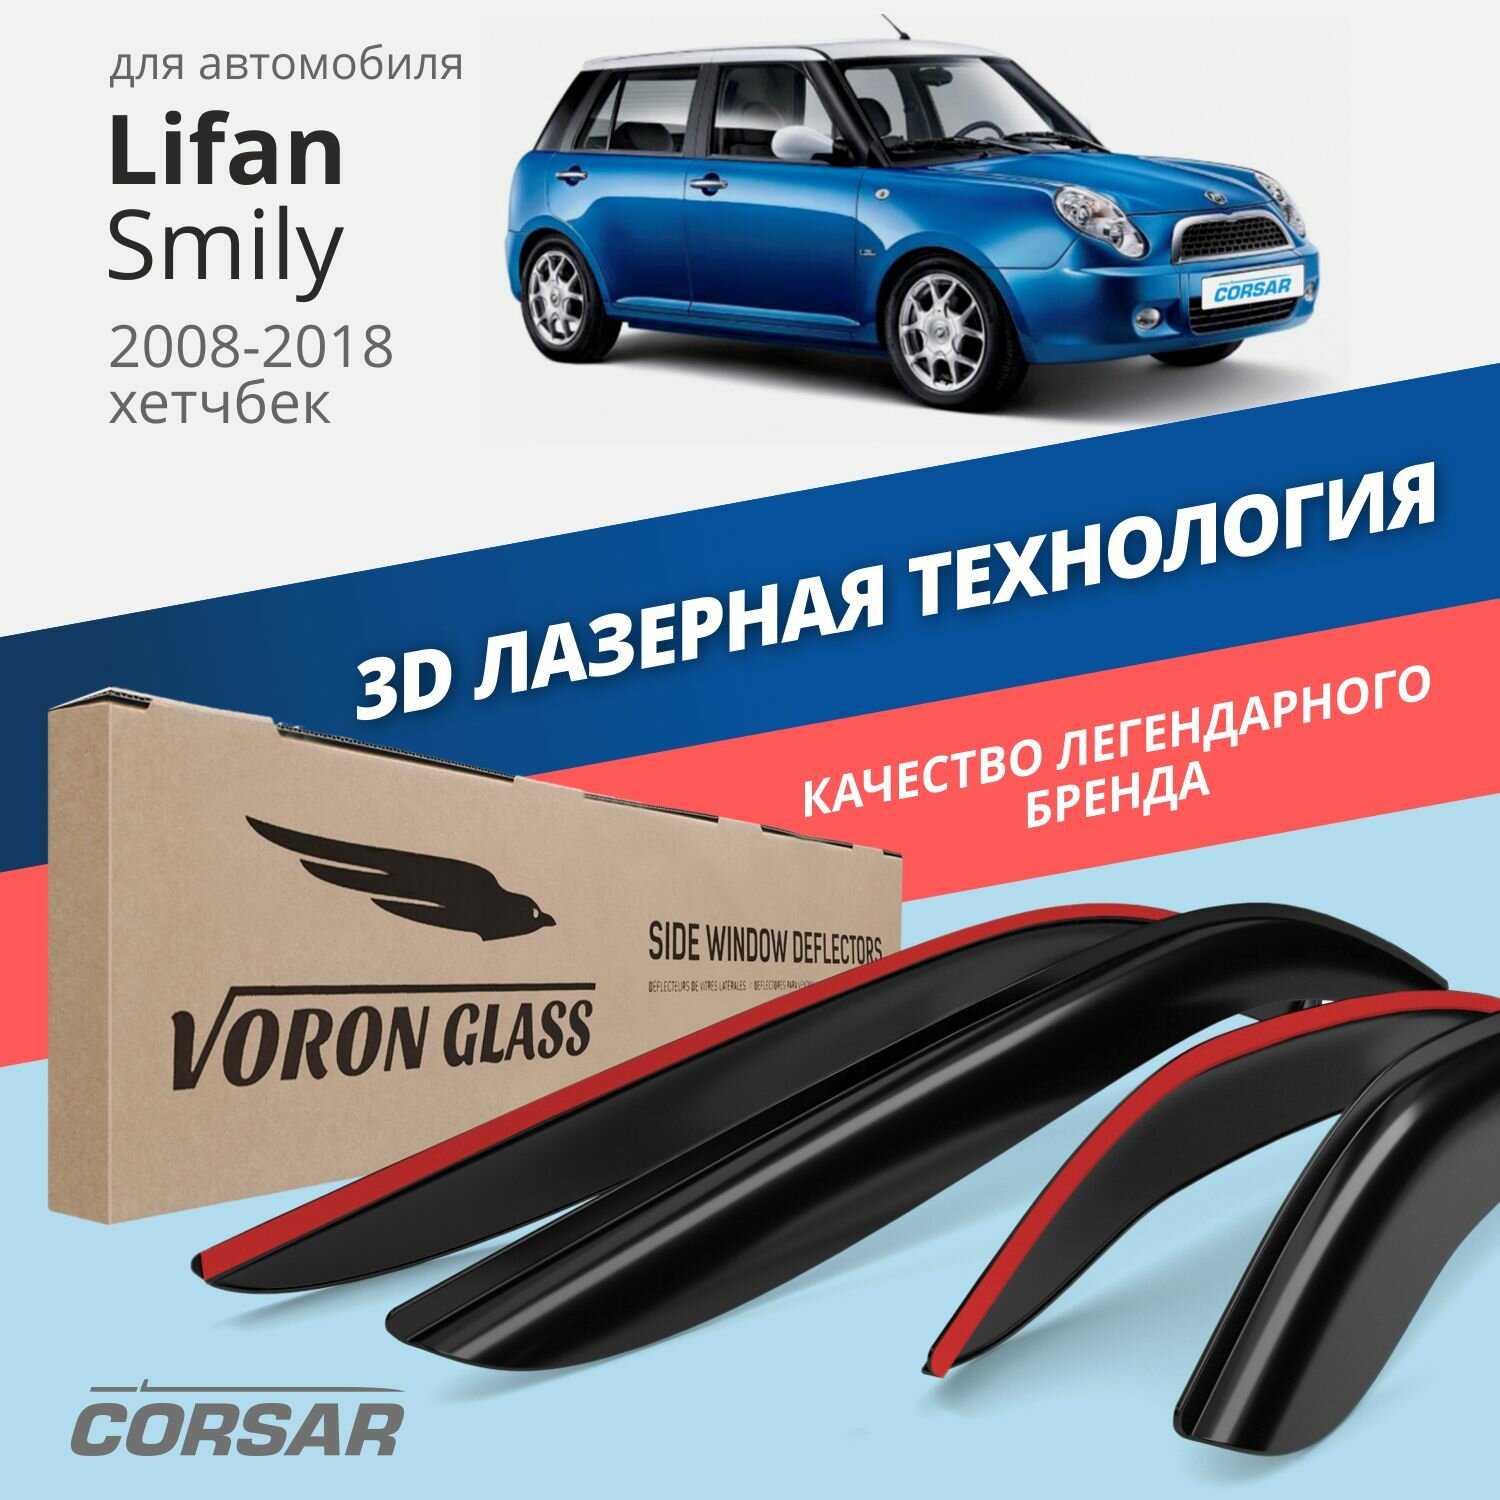 Дефлекторы окон Voron Glass серия Corsar для Lifan Smily 2008 - 2018/хетчбек накладные 4 шт.